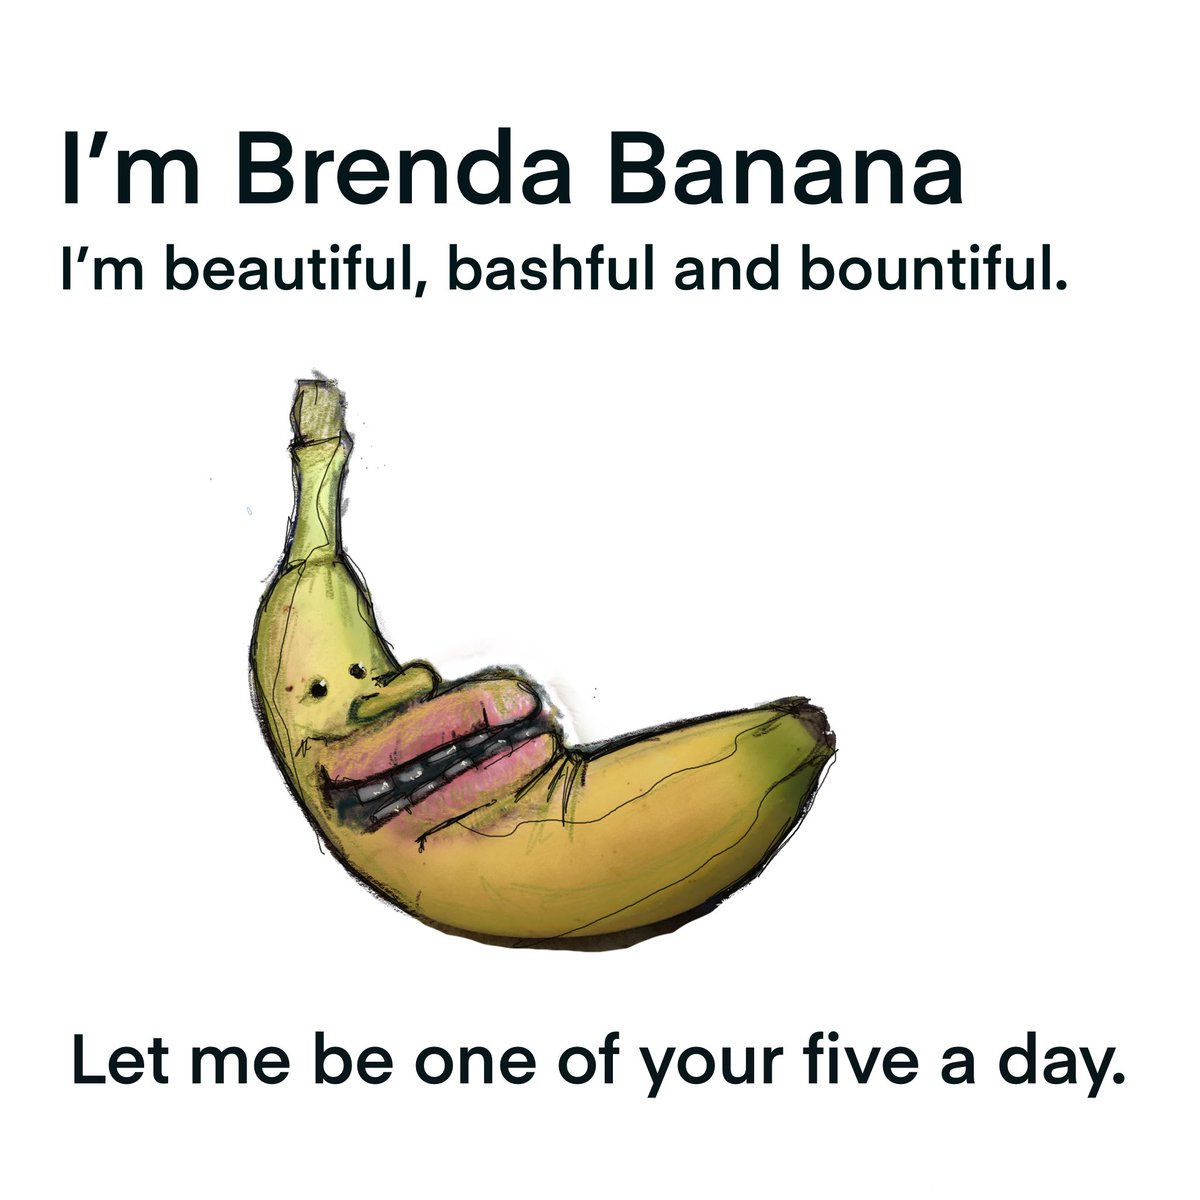 Brenda Banana
#childrensillustrator #childrenspoetry #bananas